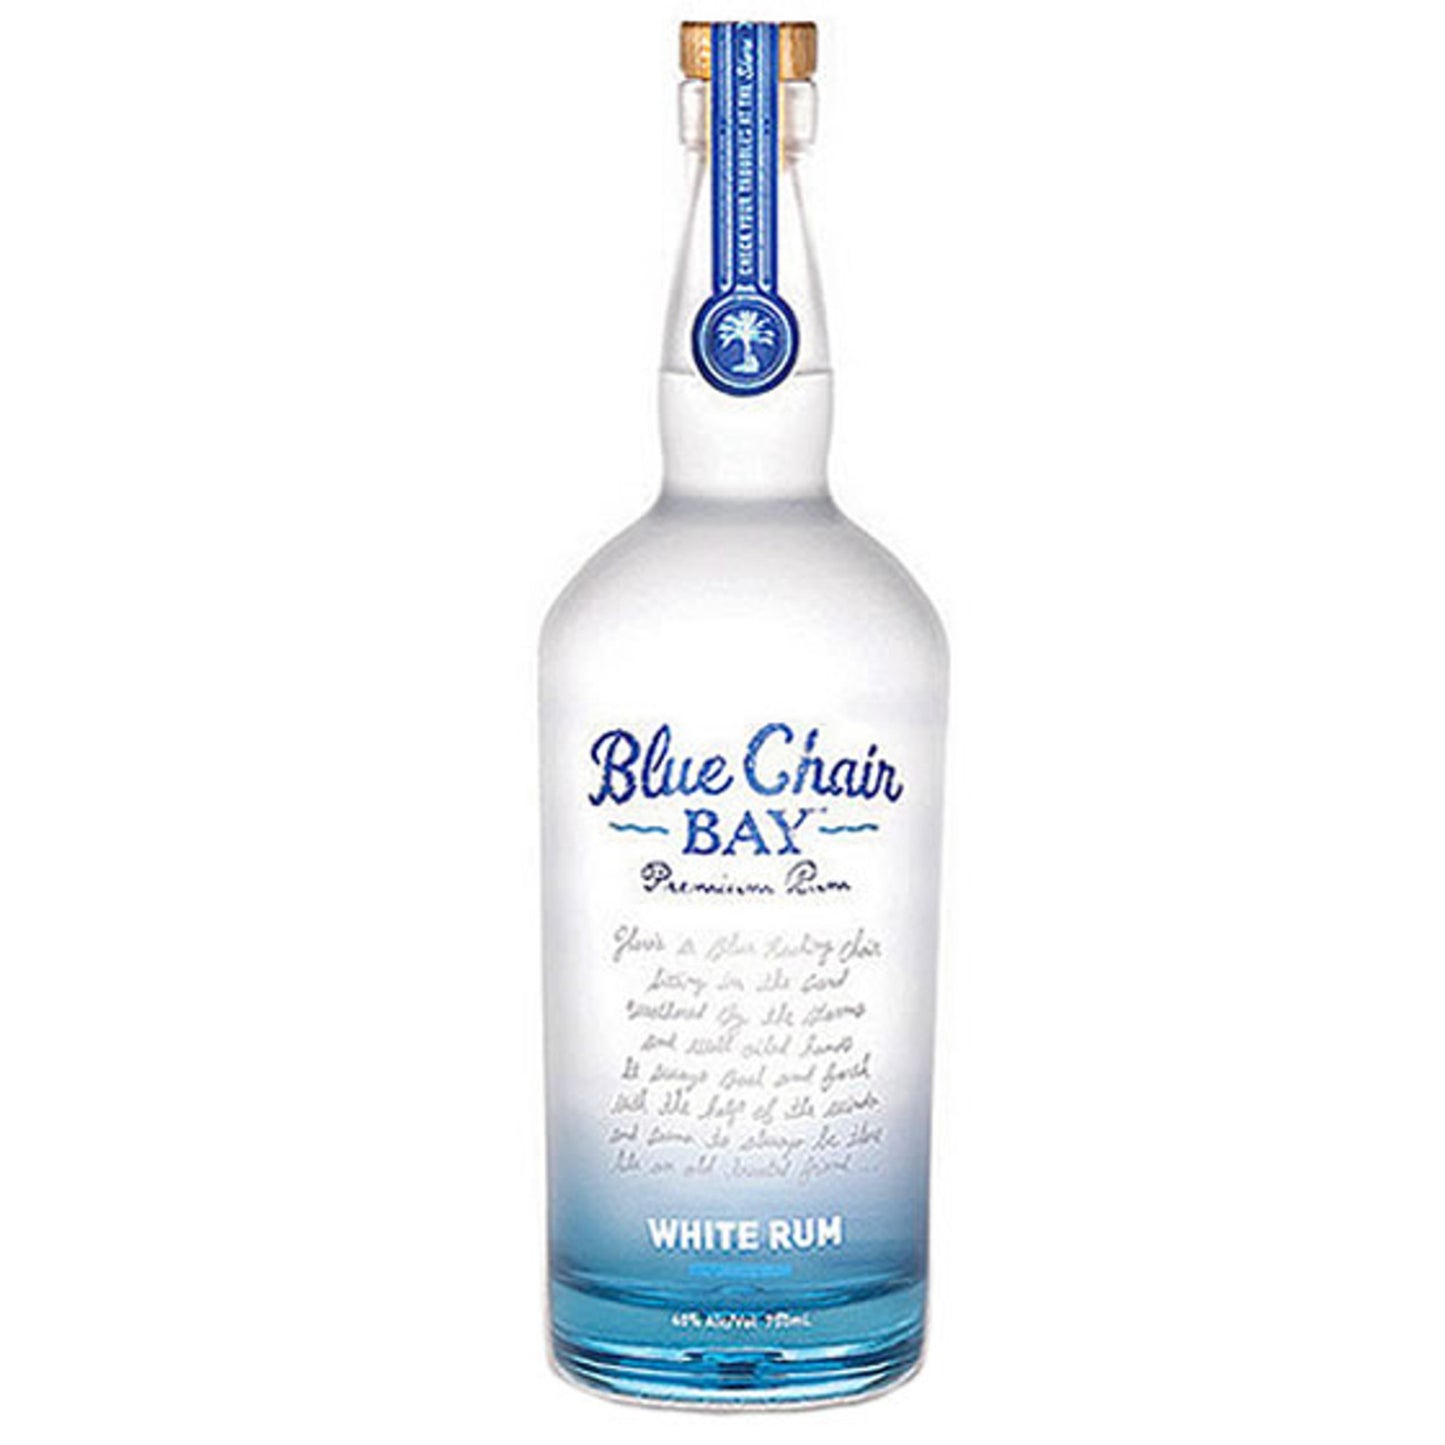 Blue Chair Bay White Rum - Liquor Geeks